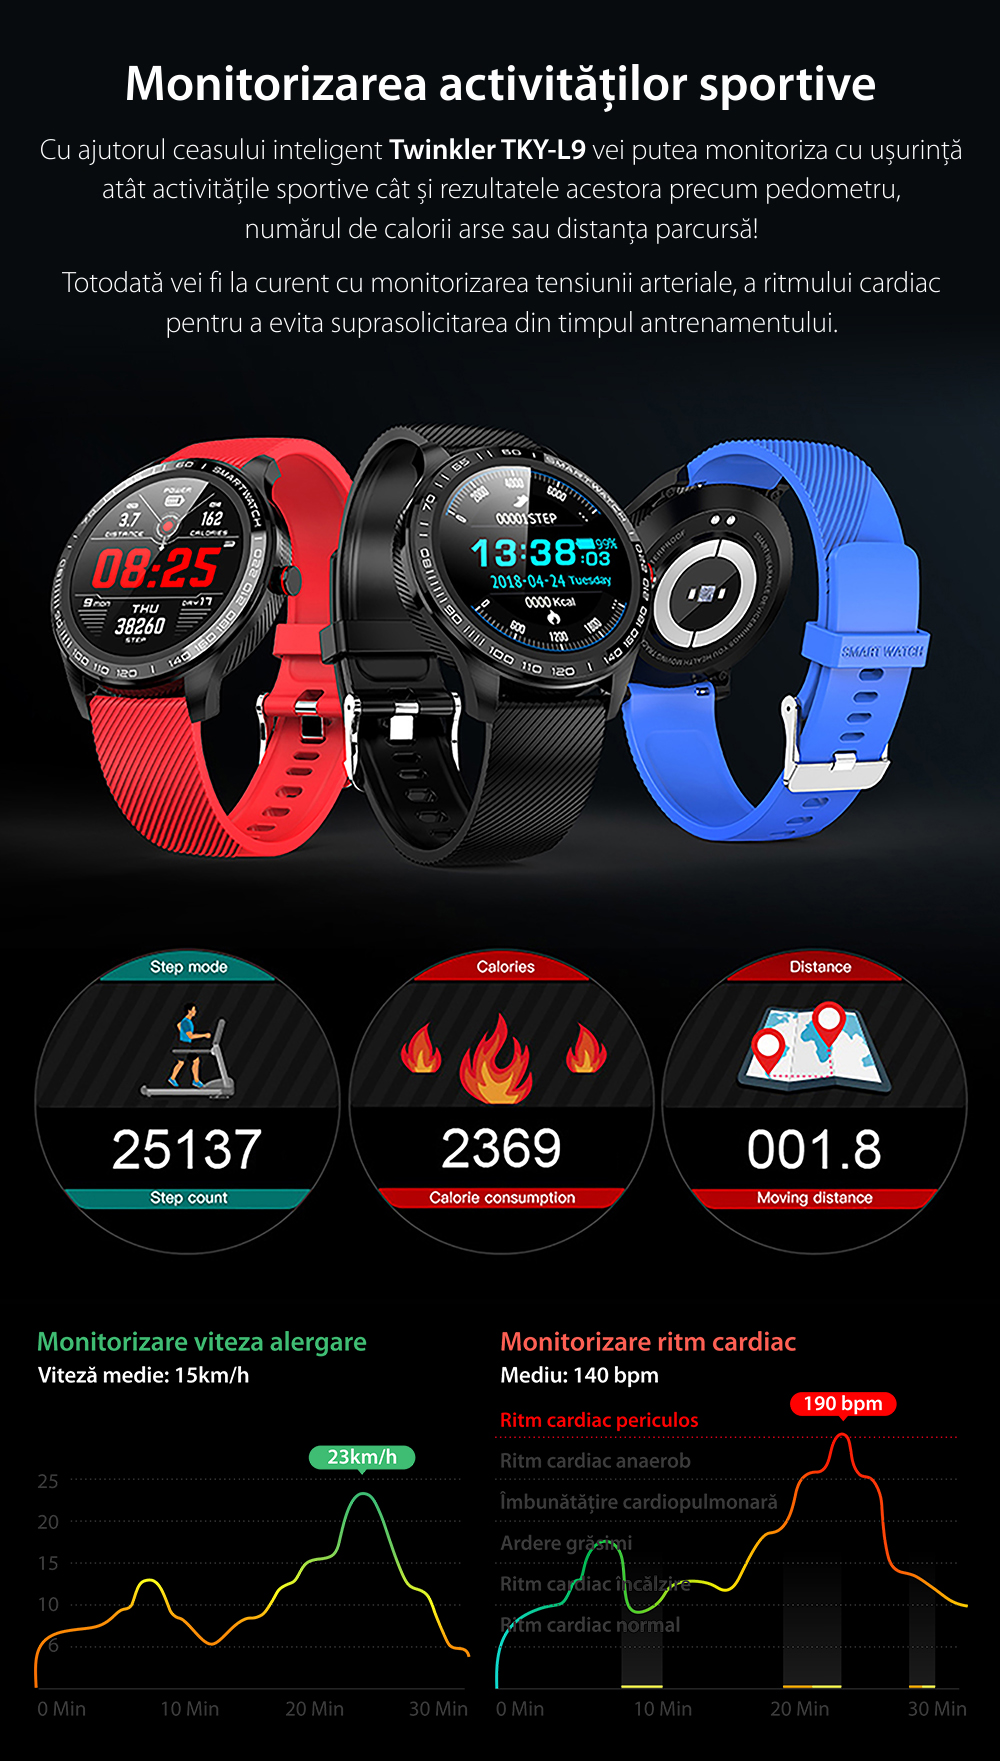 Ceas Smartwatch Twinkler TKY-M9 (L9) cu functie de monitorizare ritm cardiac, Tensiune arteriala, EKG, Nivel oxigen, Notificari Apel/ SMS, Incarcare magnetica, Negru